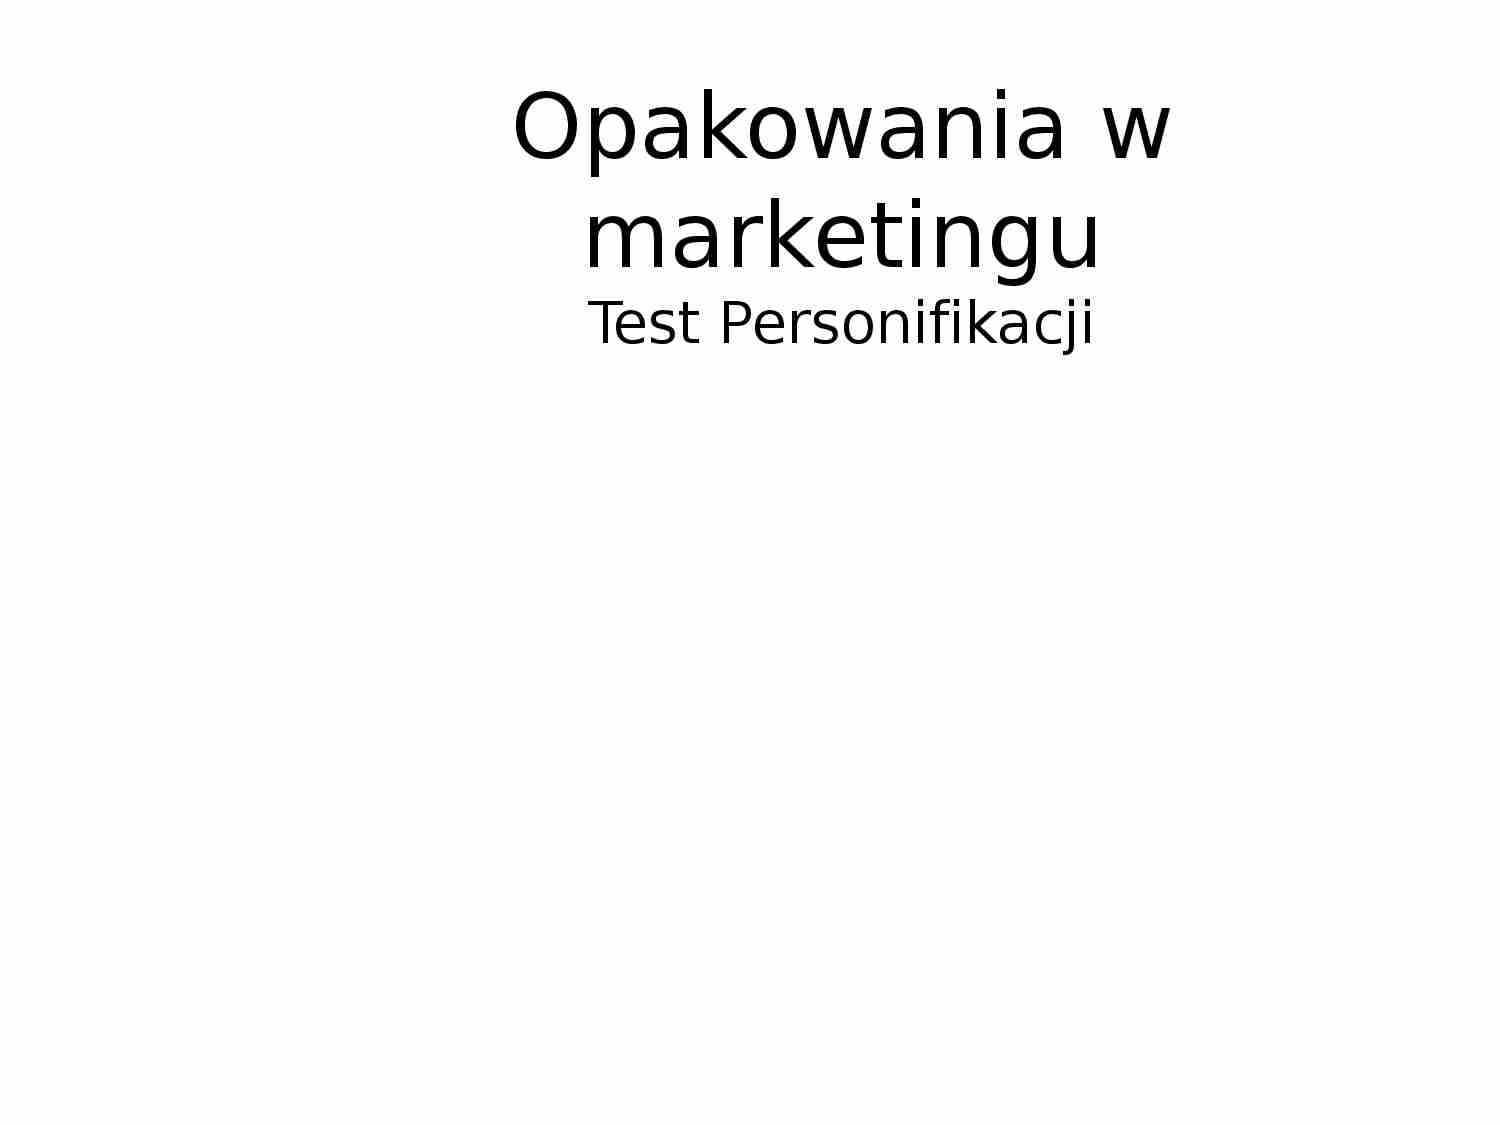 Opakowania w marketingu,Test Personifikacji - strona 1